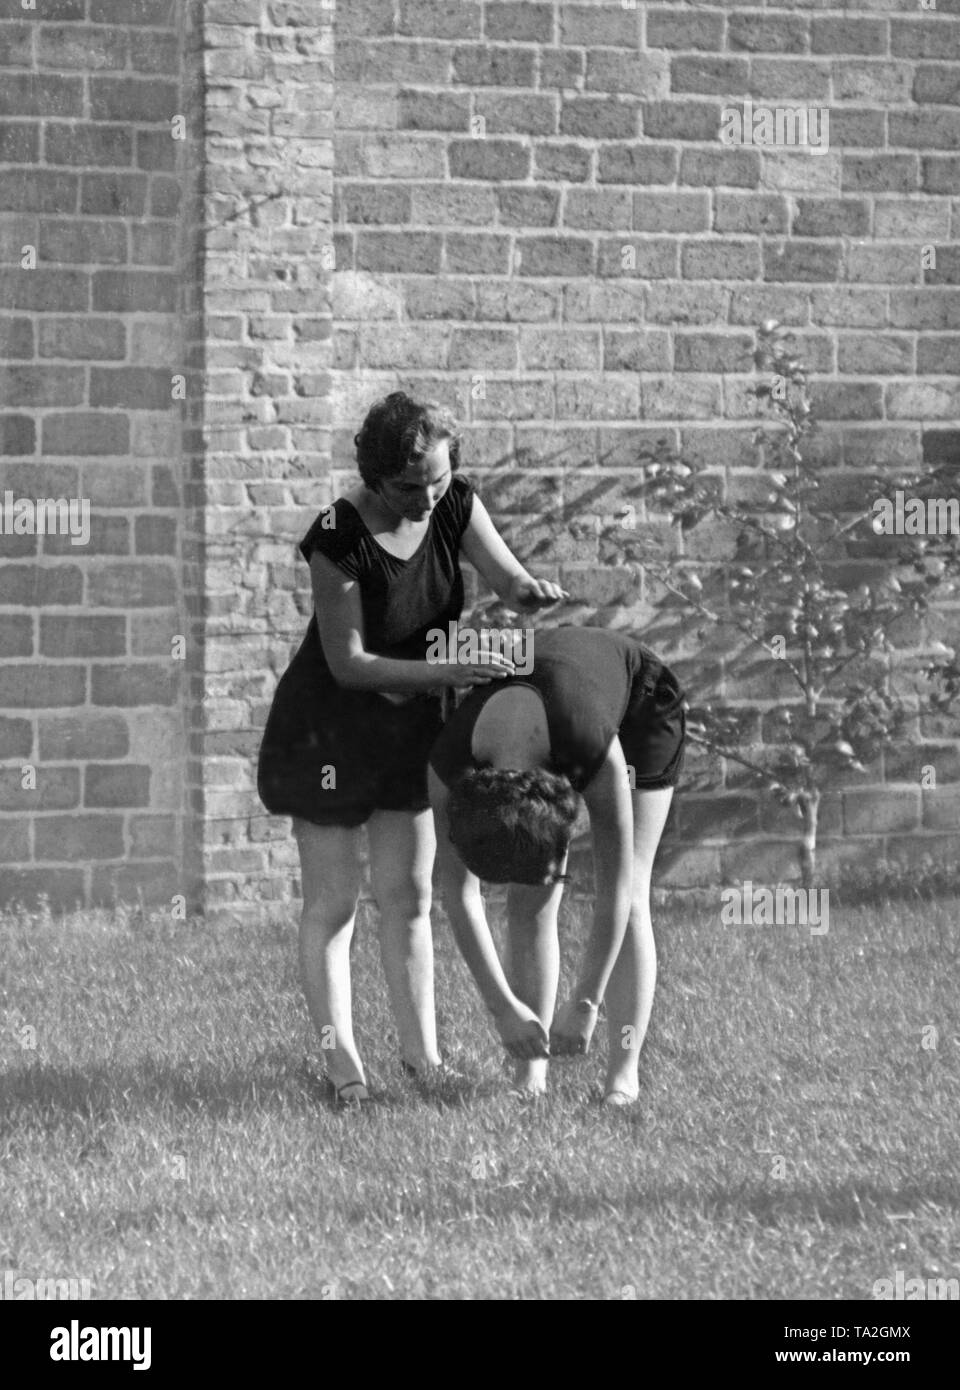 Women doing gymnastics in the 1930s or 1940s (undated shot). Photo: Wanda von Debschitz-Kunowski. Stock Photo